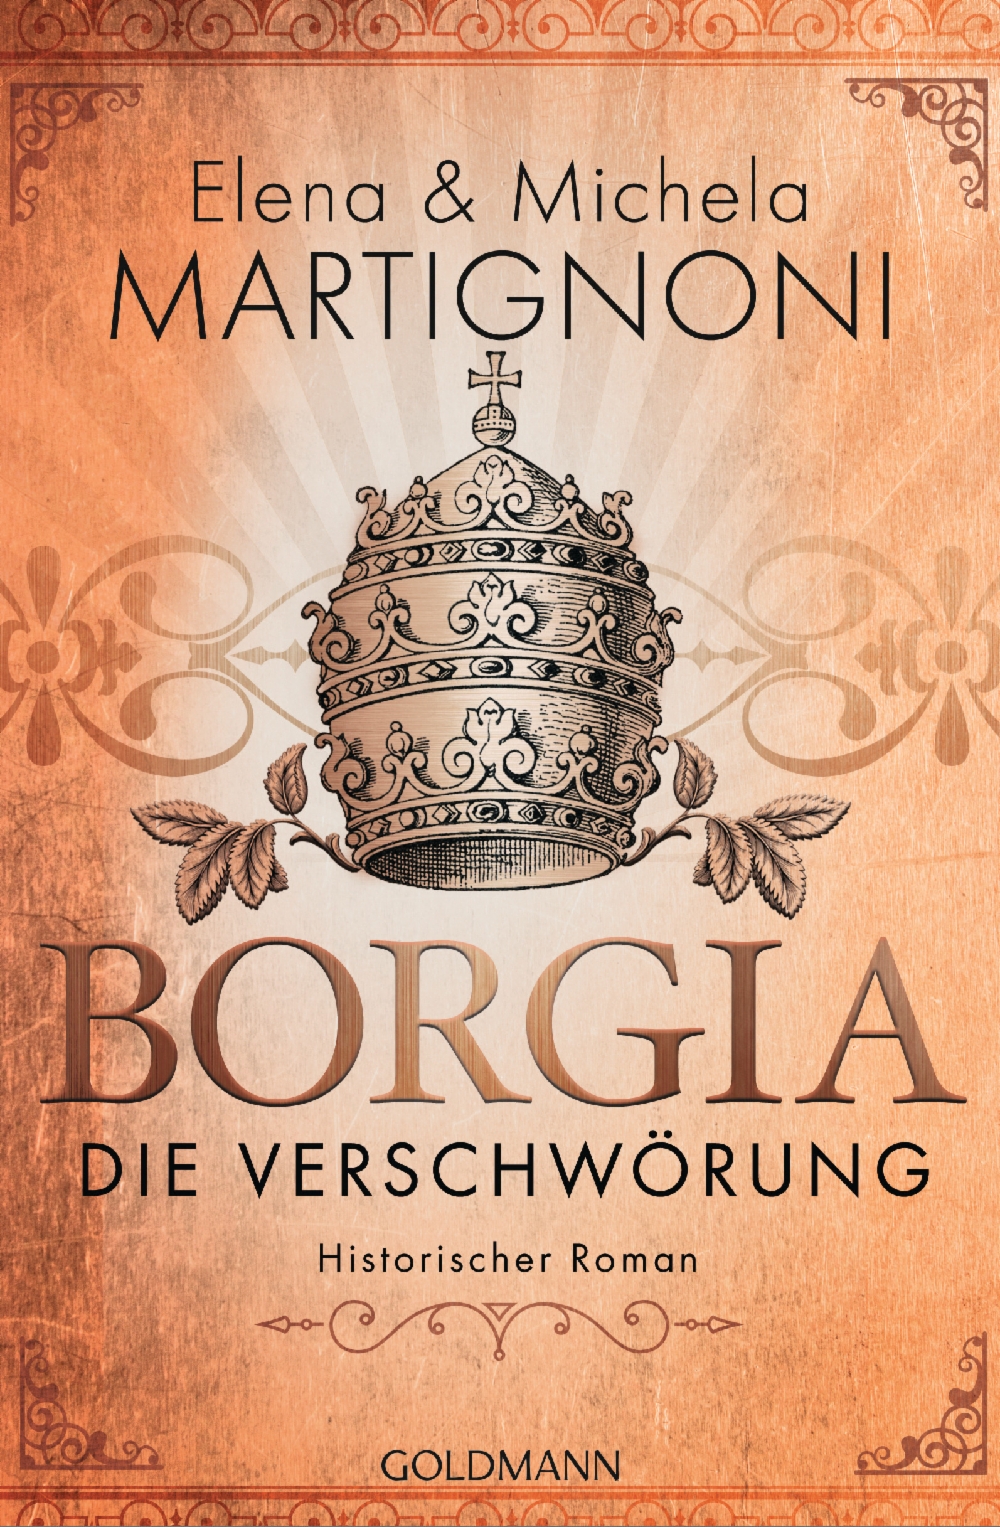 Borgia: Die Verschwörung